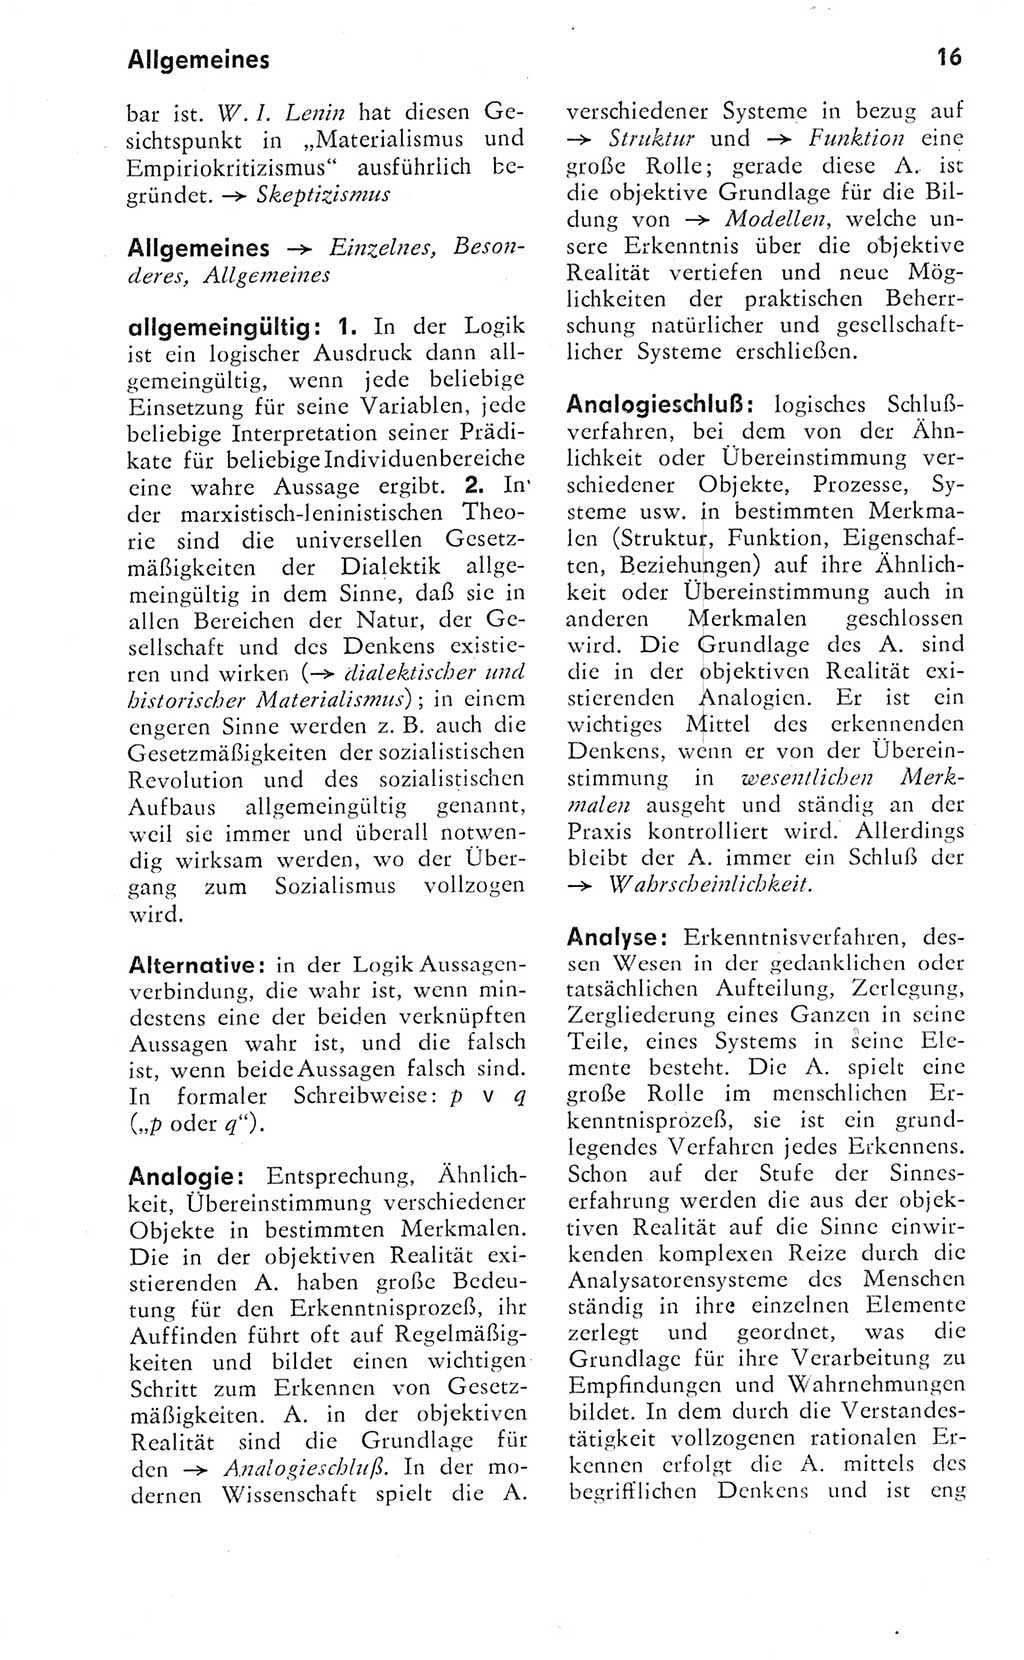 Kleines Wörterbuch der marxistisch-leninistischen Philosophie [Deutsche Demokratische Republik (DDR)] 1974, Seite 16 (Kl. Wb. ML Phil. DDR 1974, S. 16)